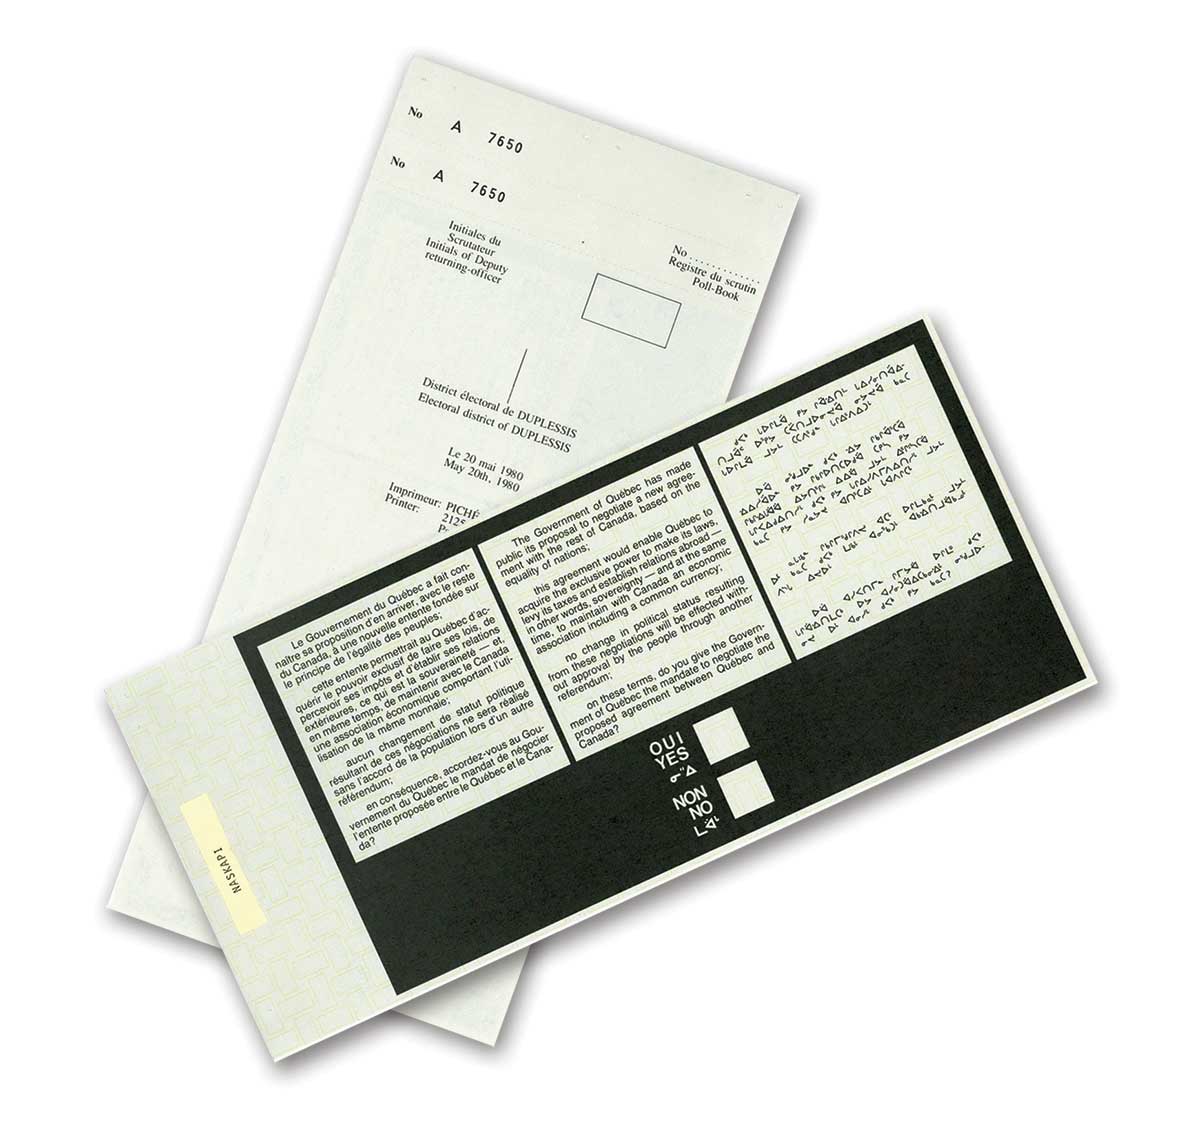 Referendum ballot paper for the 1980 referendum